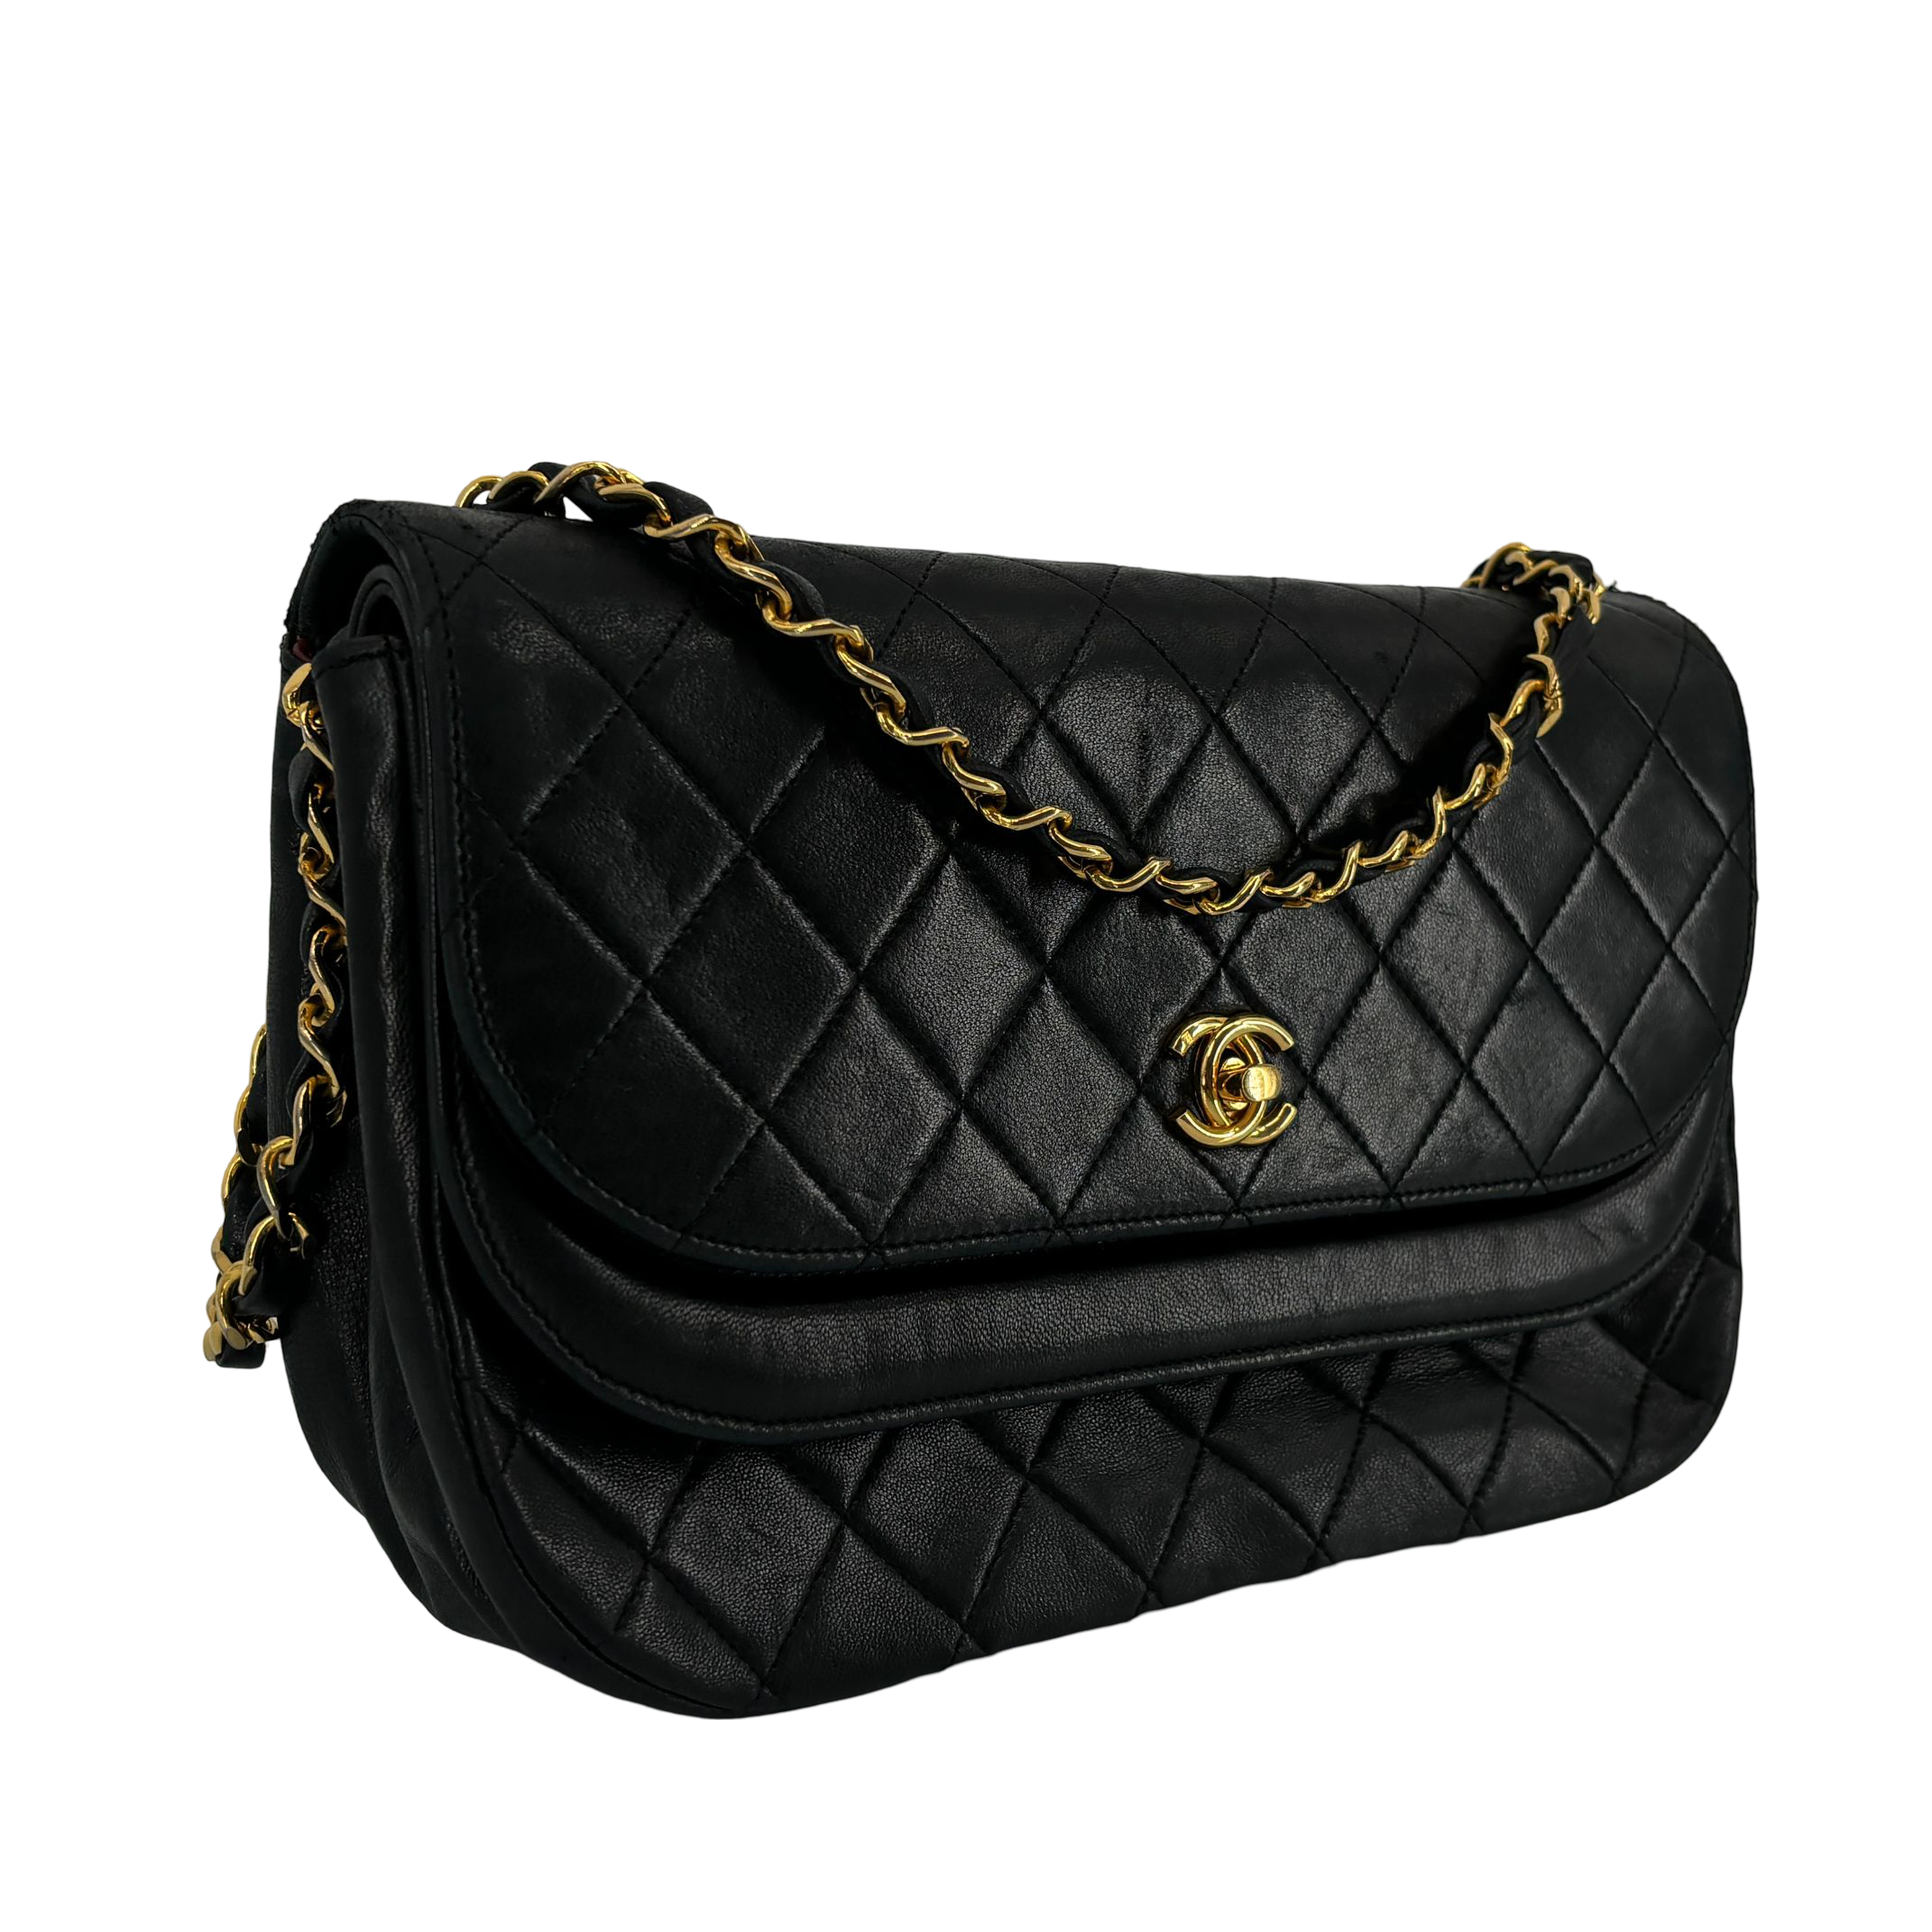 Chanel Half-Moon Double Flap Bag Black Matelassé Leather